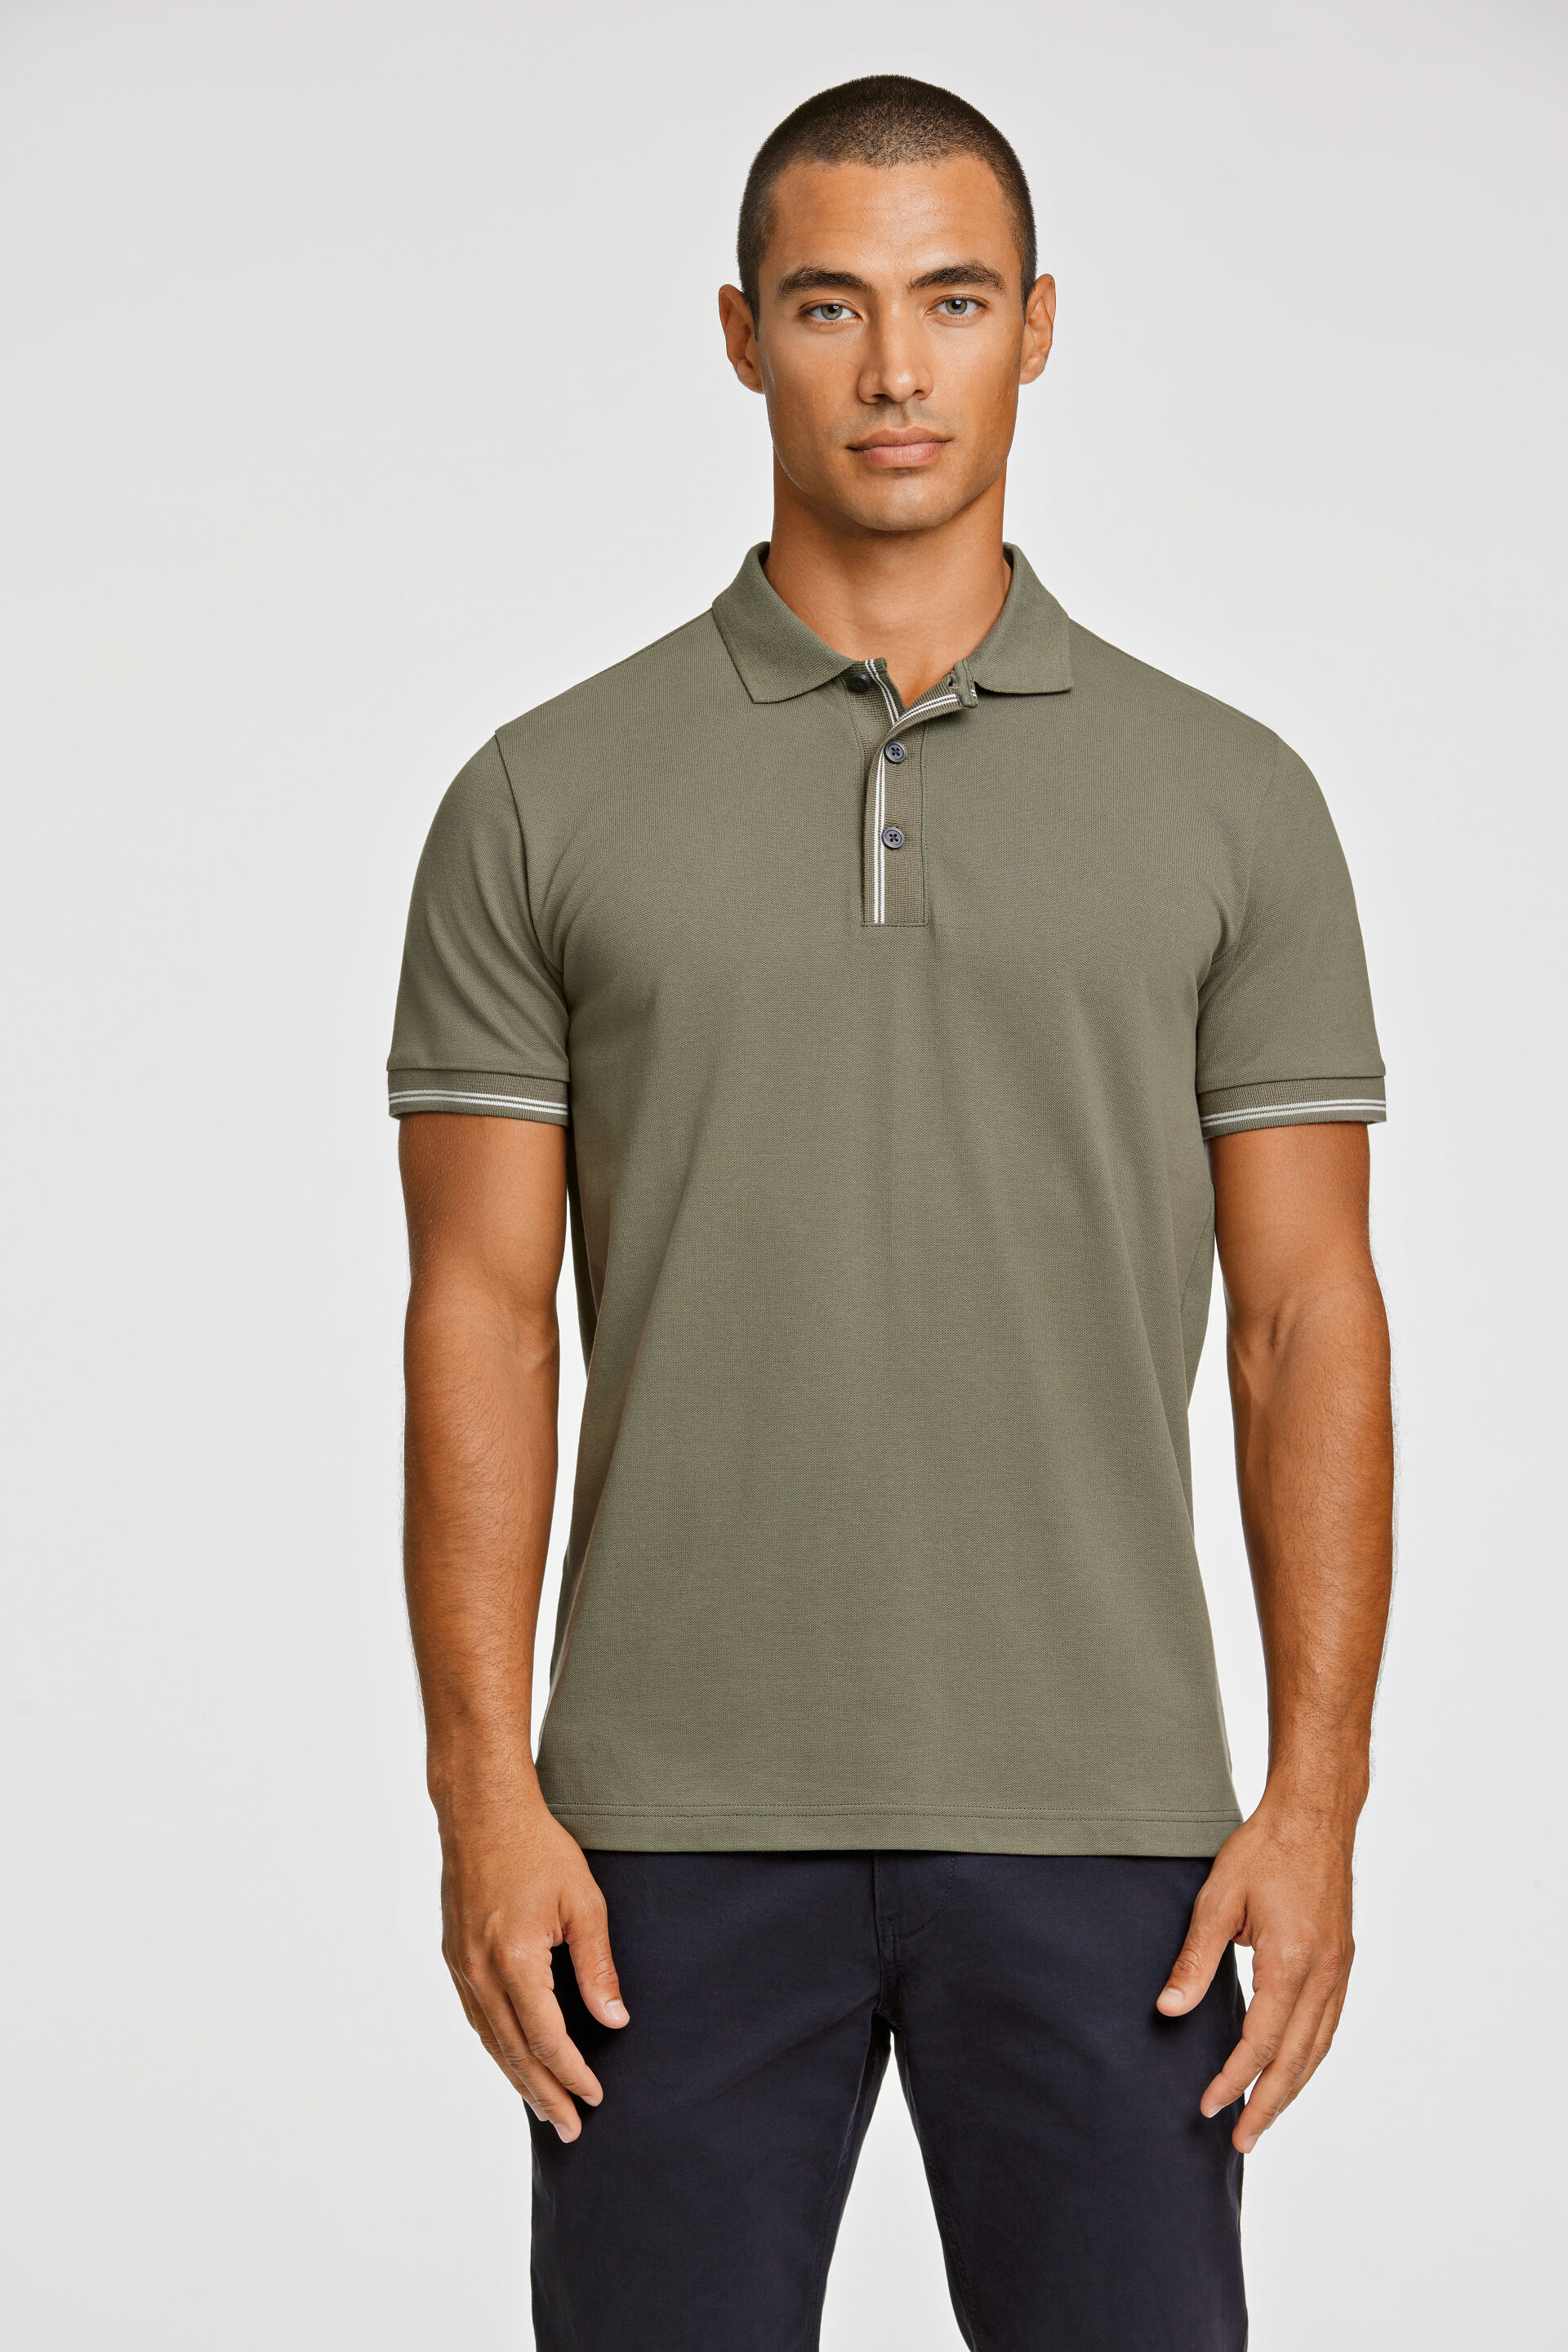 Polo shirt Polo shirt Green 30-404052